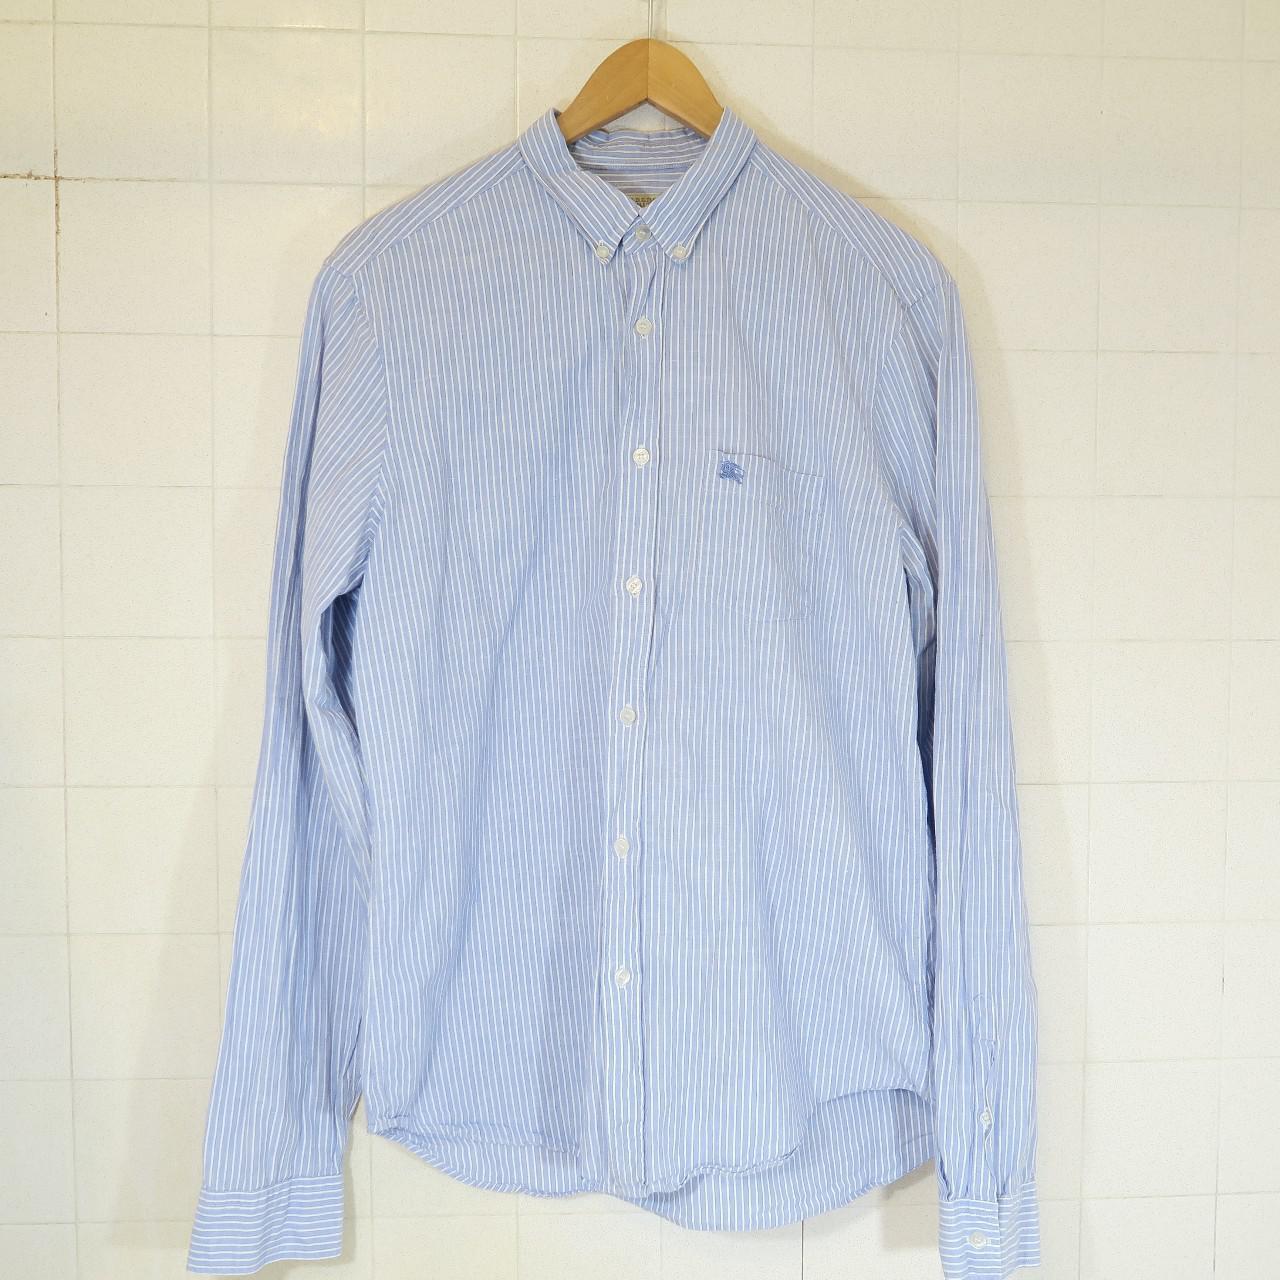 Burberry Men's Blue and White Shirt | Depop